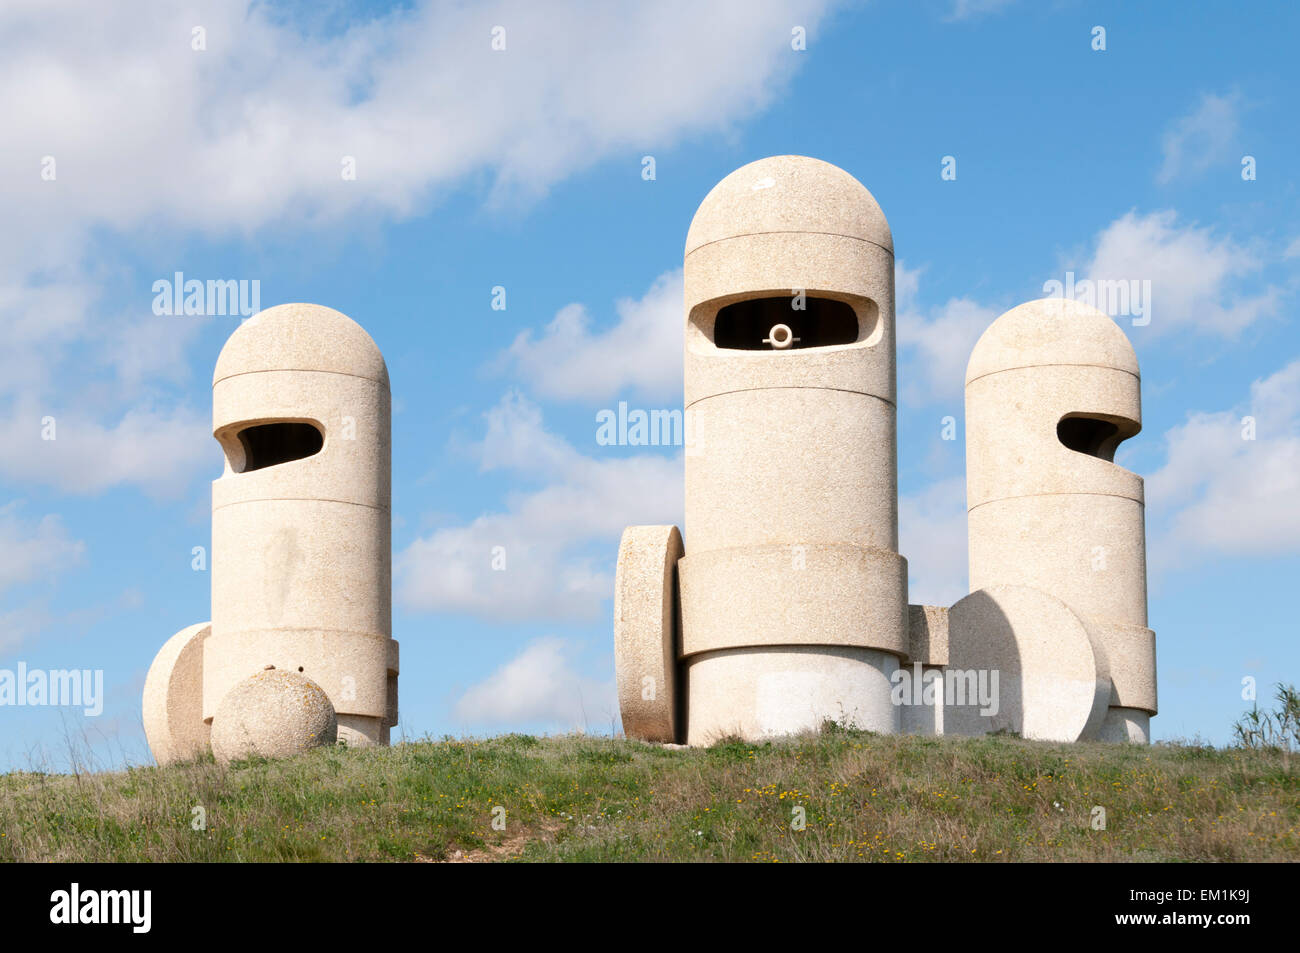 Les Chevaliers Cathares est une sculpture de Jacques Tissinier de ciment au-dessus de l'A61 à l'Aire De Peche Loubat zone de service. Banque D'Images